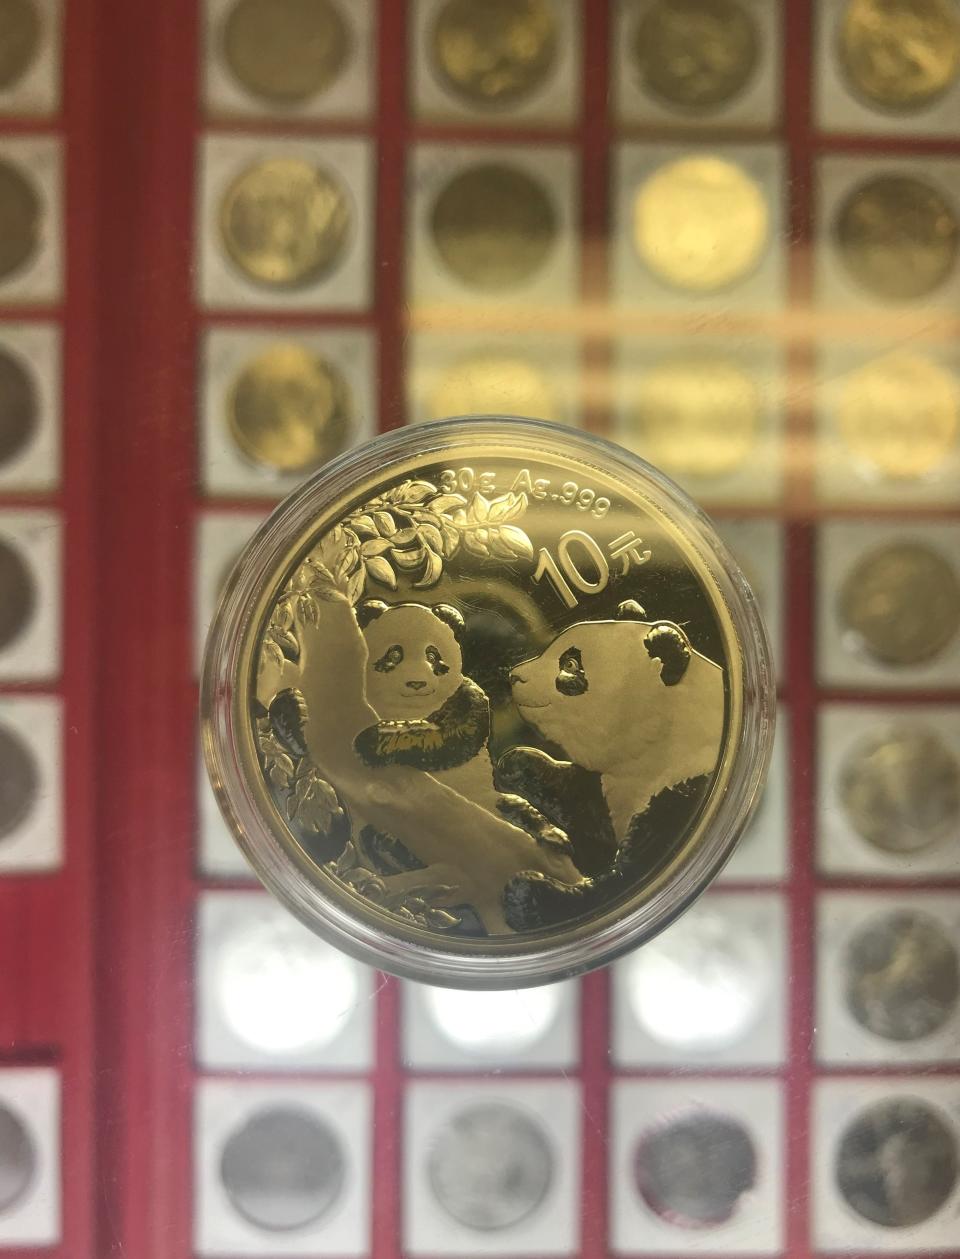 Castle Coin Shop has one-ounce silver coins featuring pandas.